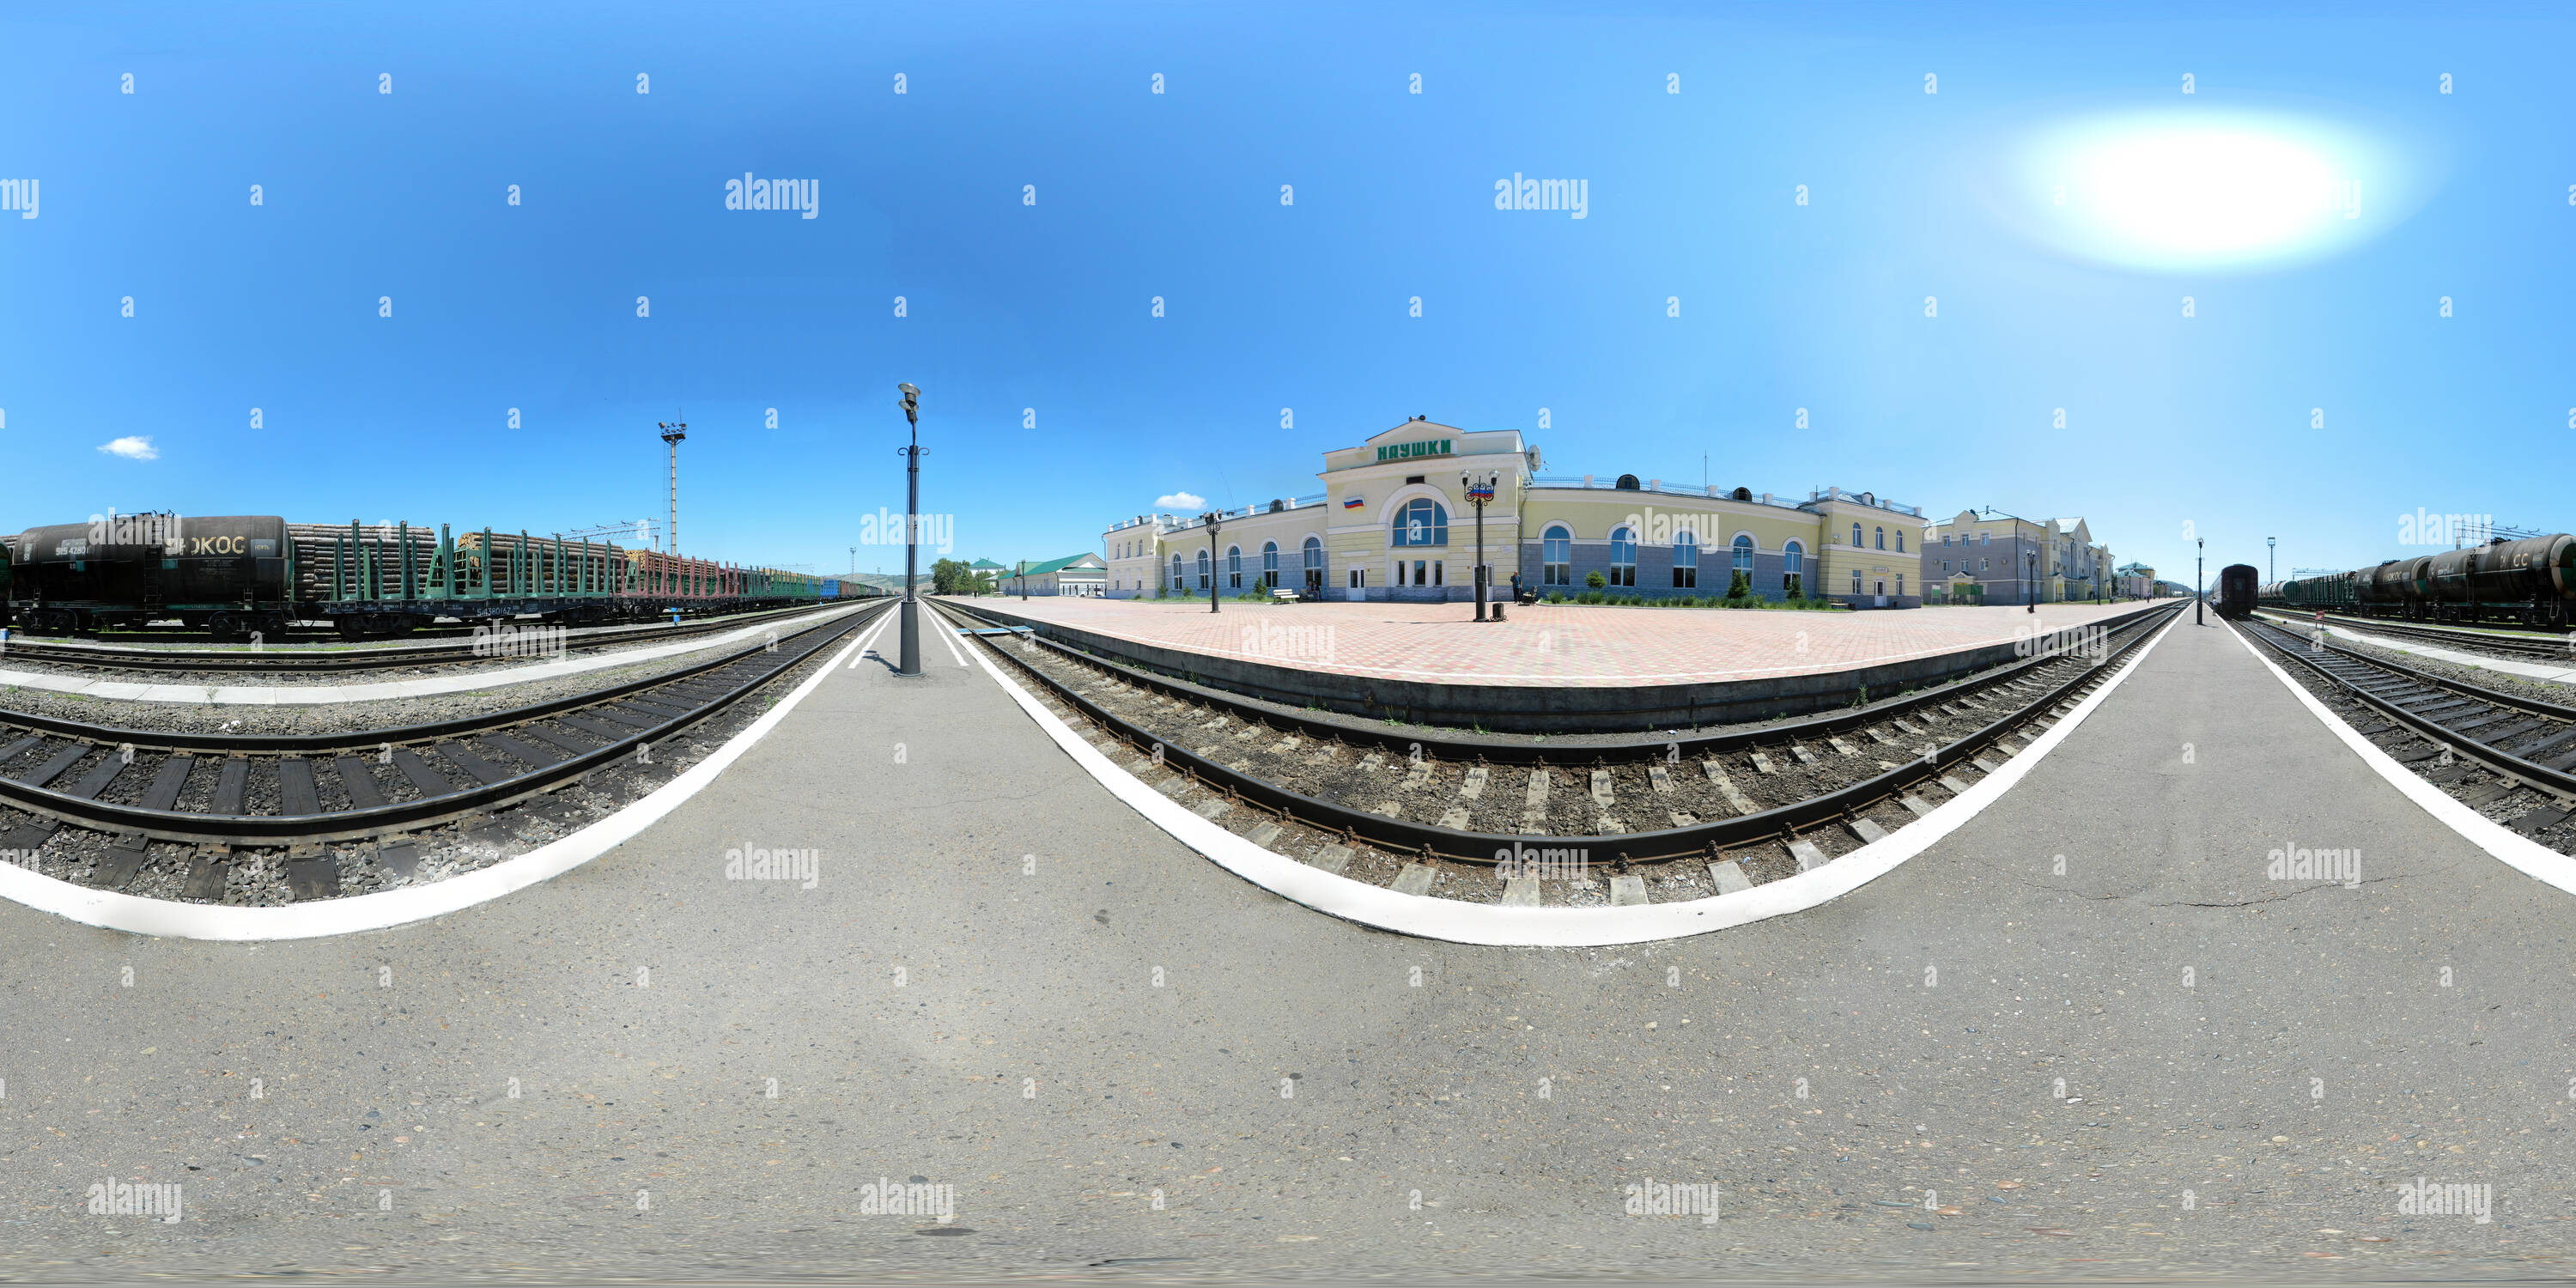 Visualizzazione panoramica a 360 gradi di Stazione ferroviaria